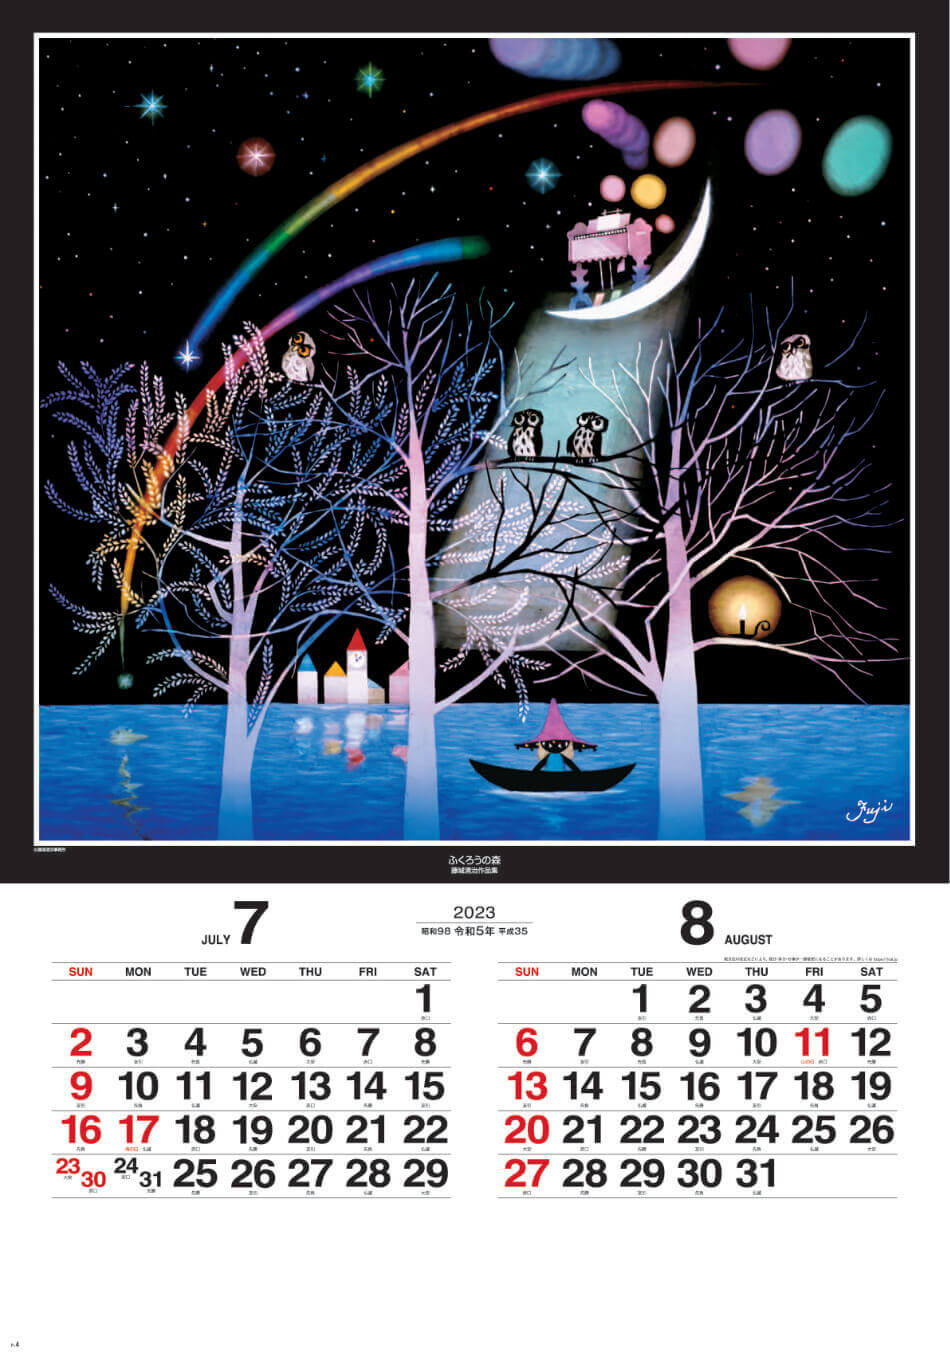 7/8月 ふくろうの森 遠い日の風景から(影絵) 藤城清治 (フィルムカレンダー) 2023年カレンダーの画像